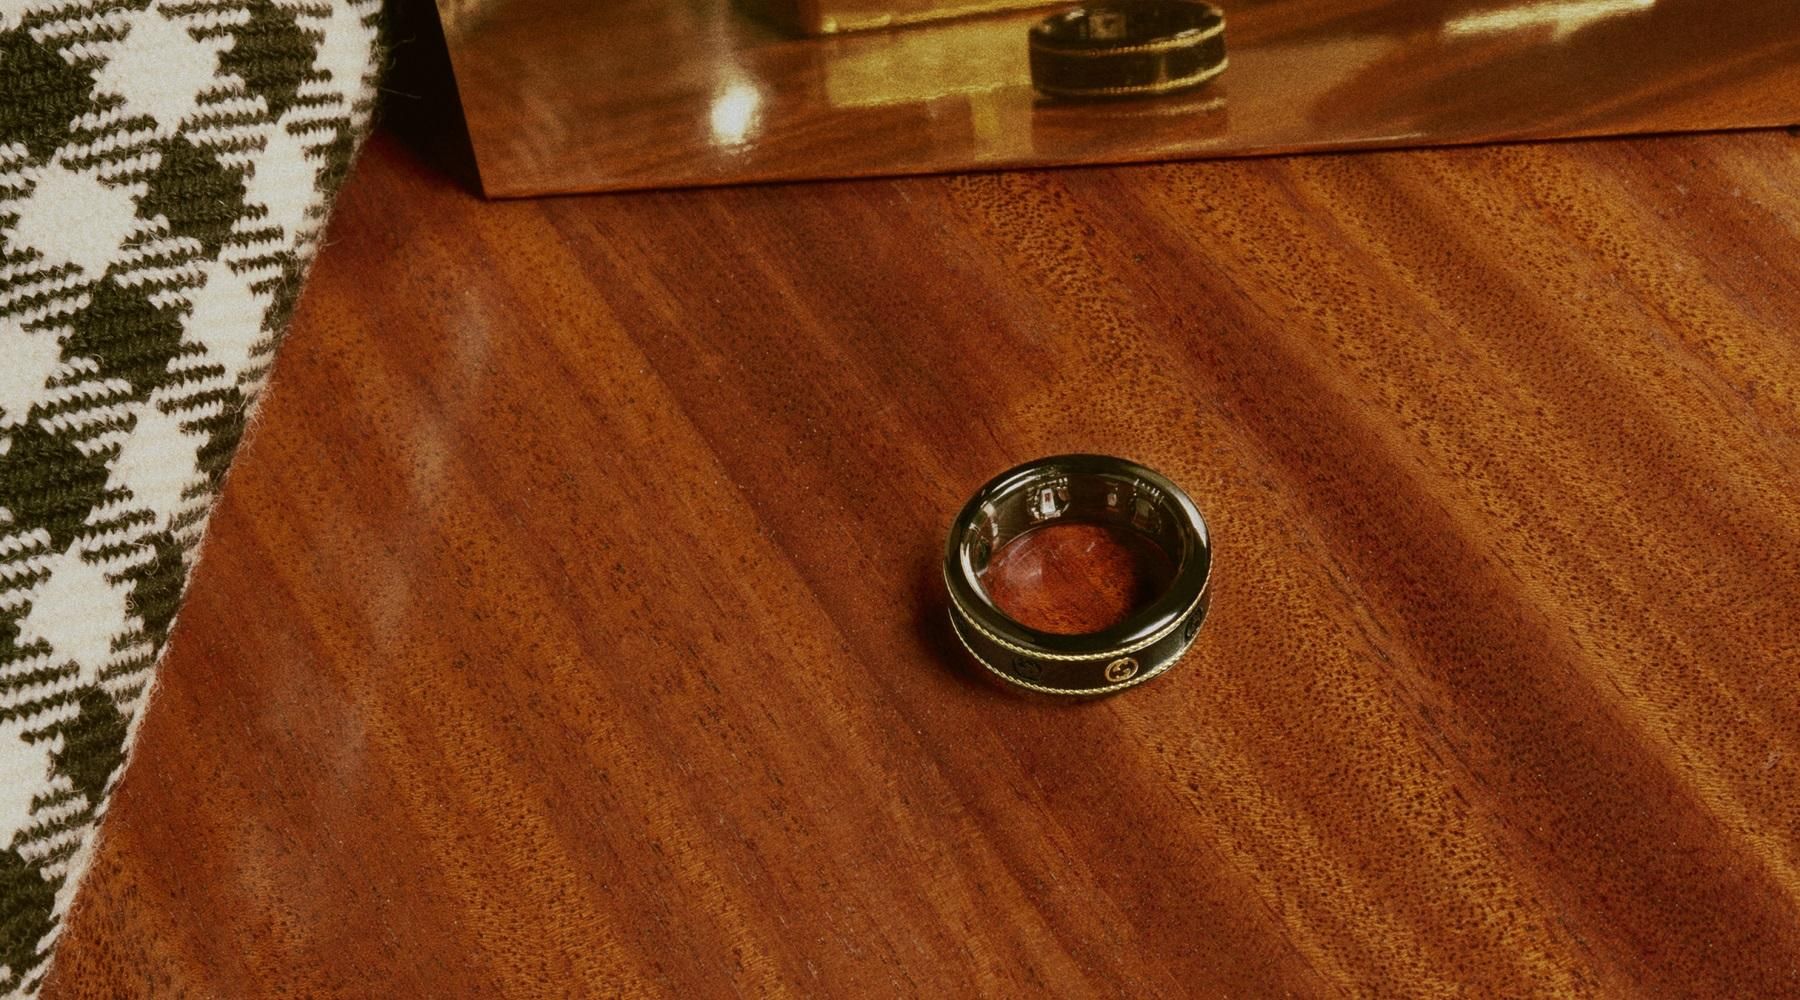 Gucci представила умное кольцо из титана и 18-каратного золота - Техно